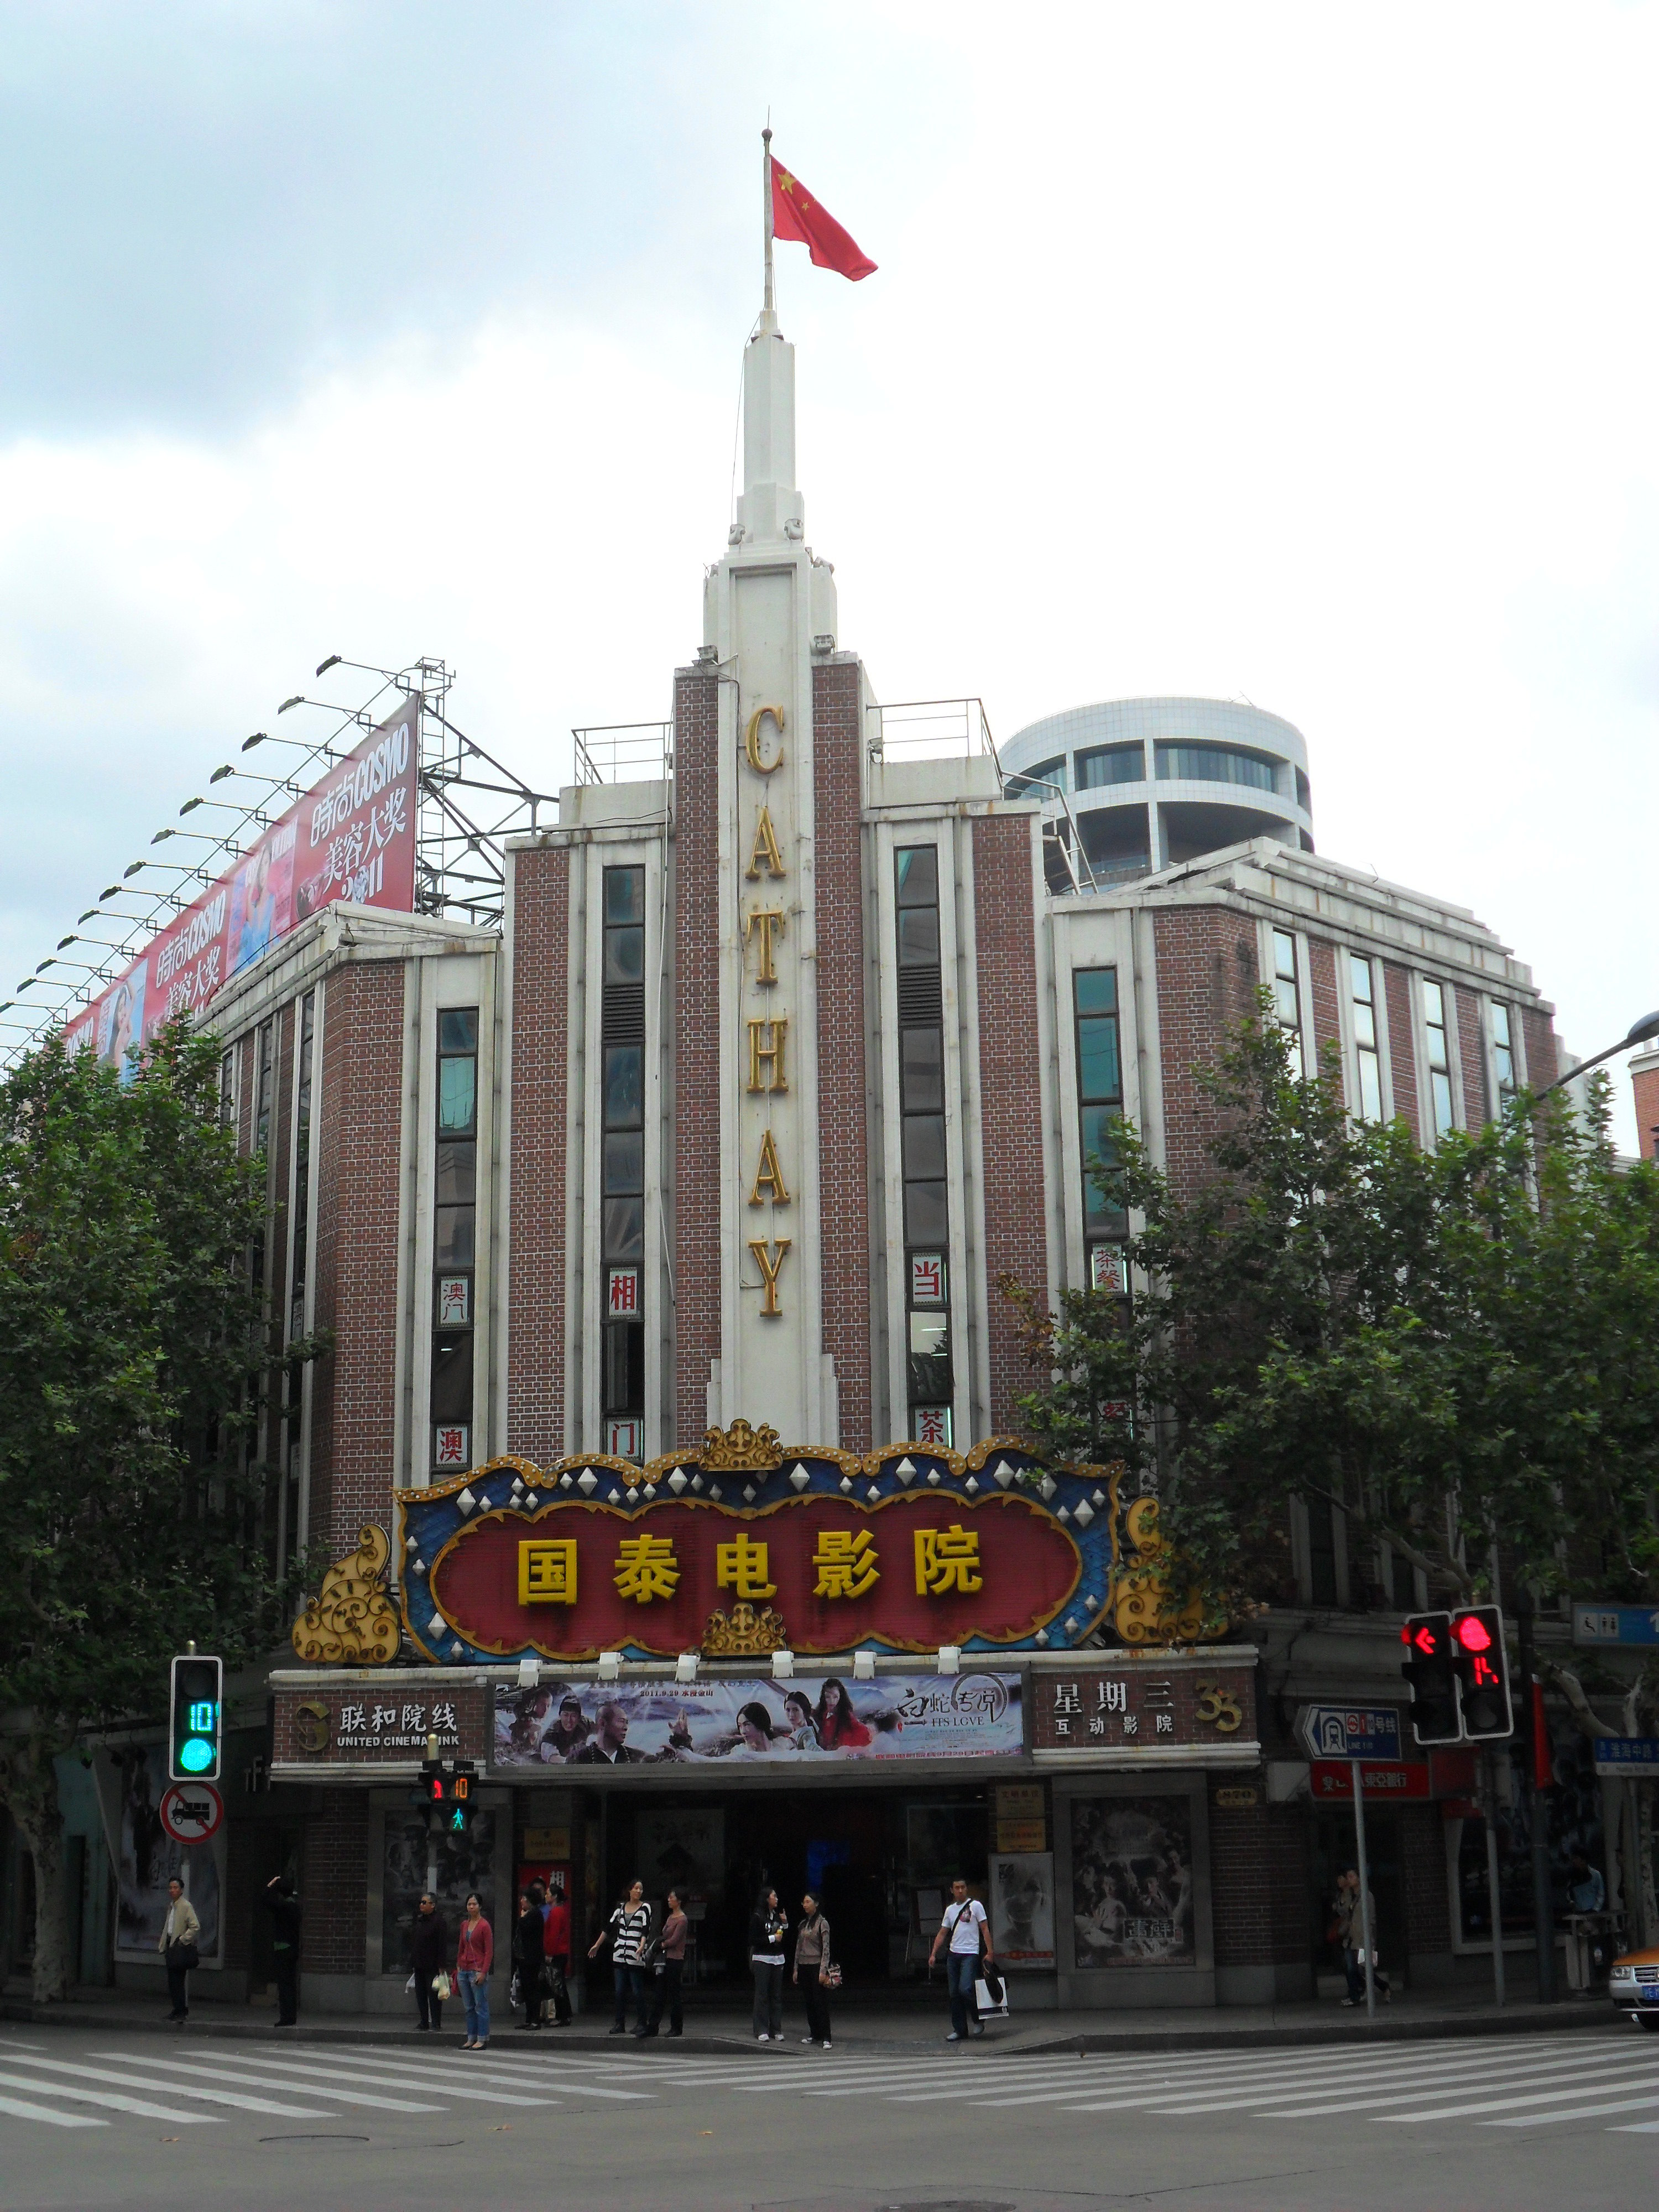 【携程攻略】上海南京路步行街景点,作为一个老上海人，同时小时候也是住在南京路附近的人来说，这条街的…